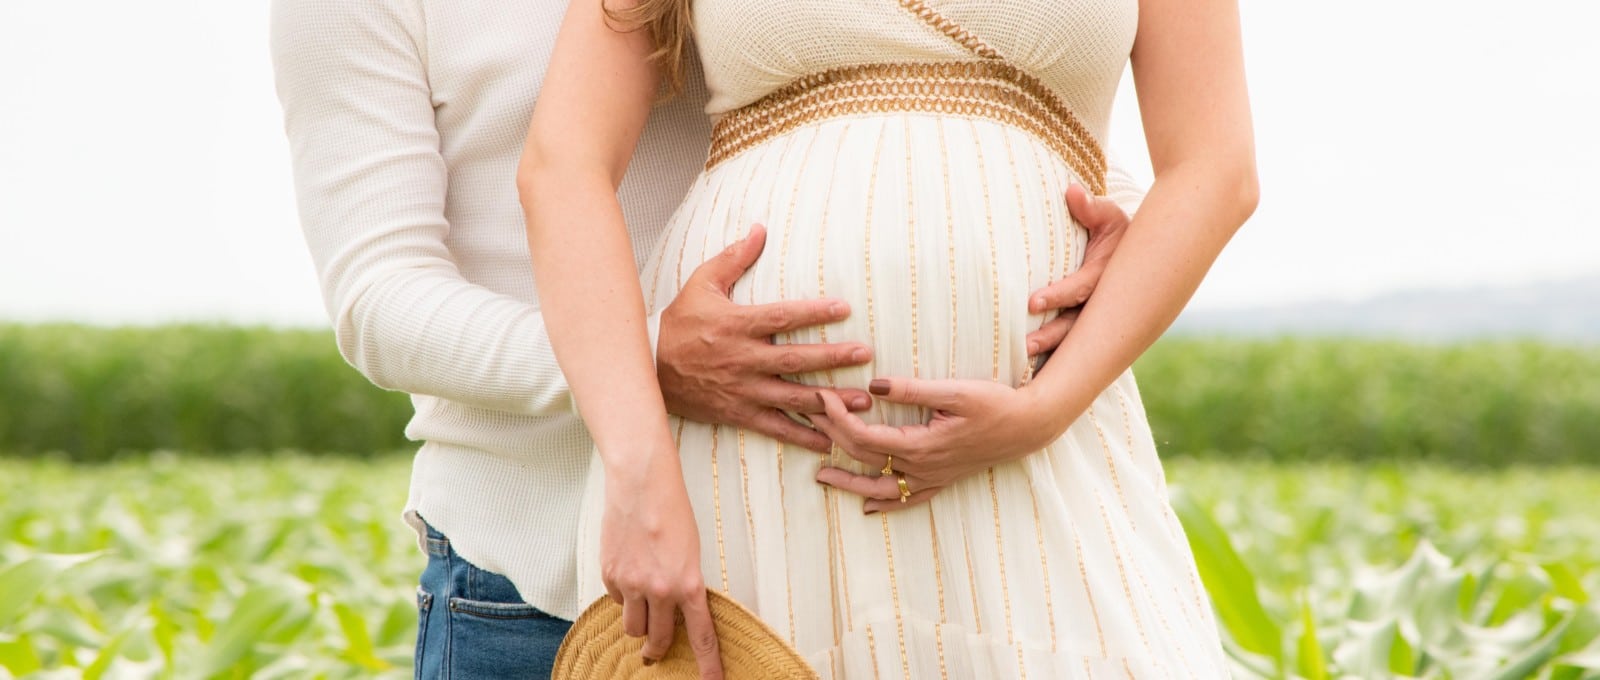 tout savoir sur les affections qui peuvent perturber le bon déroulé de la grossesse